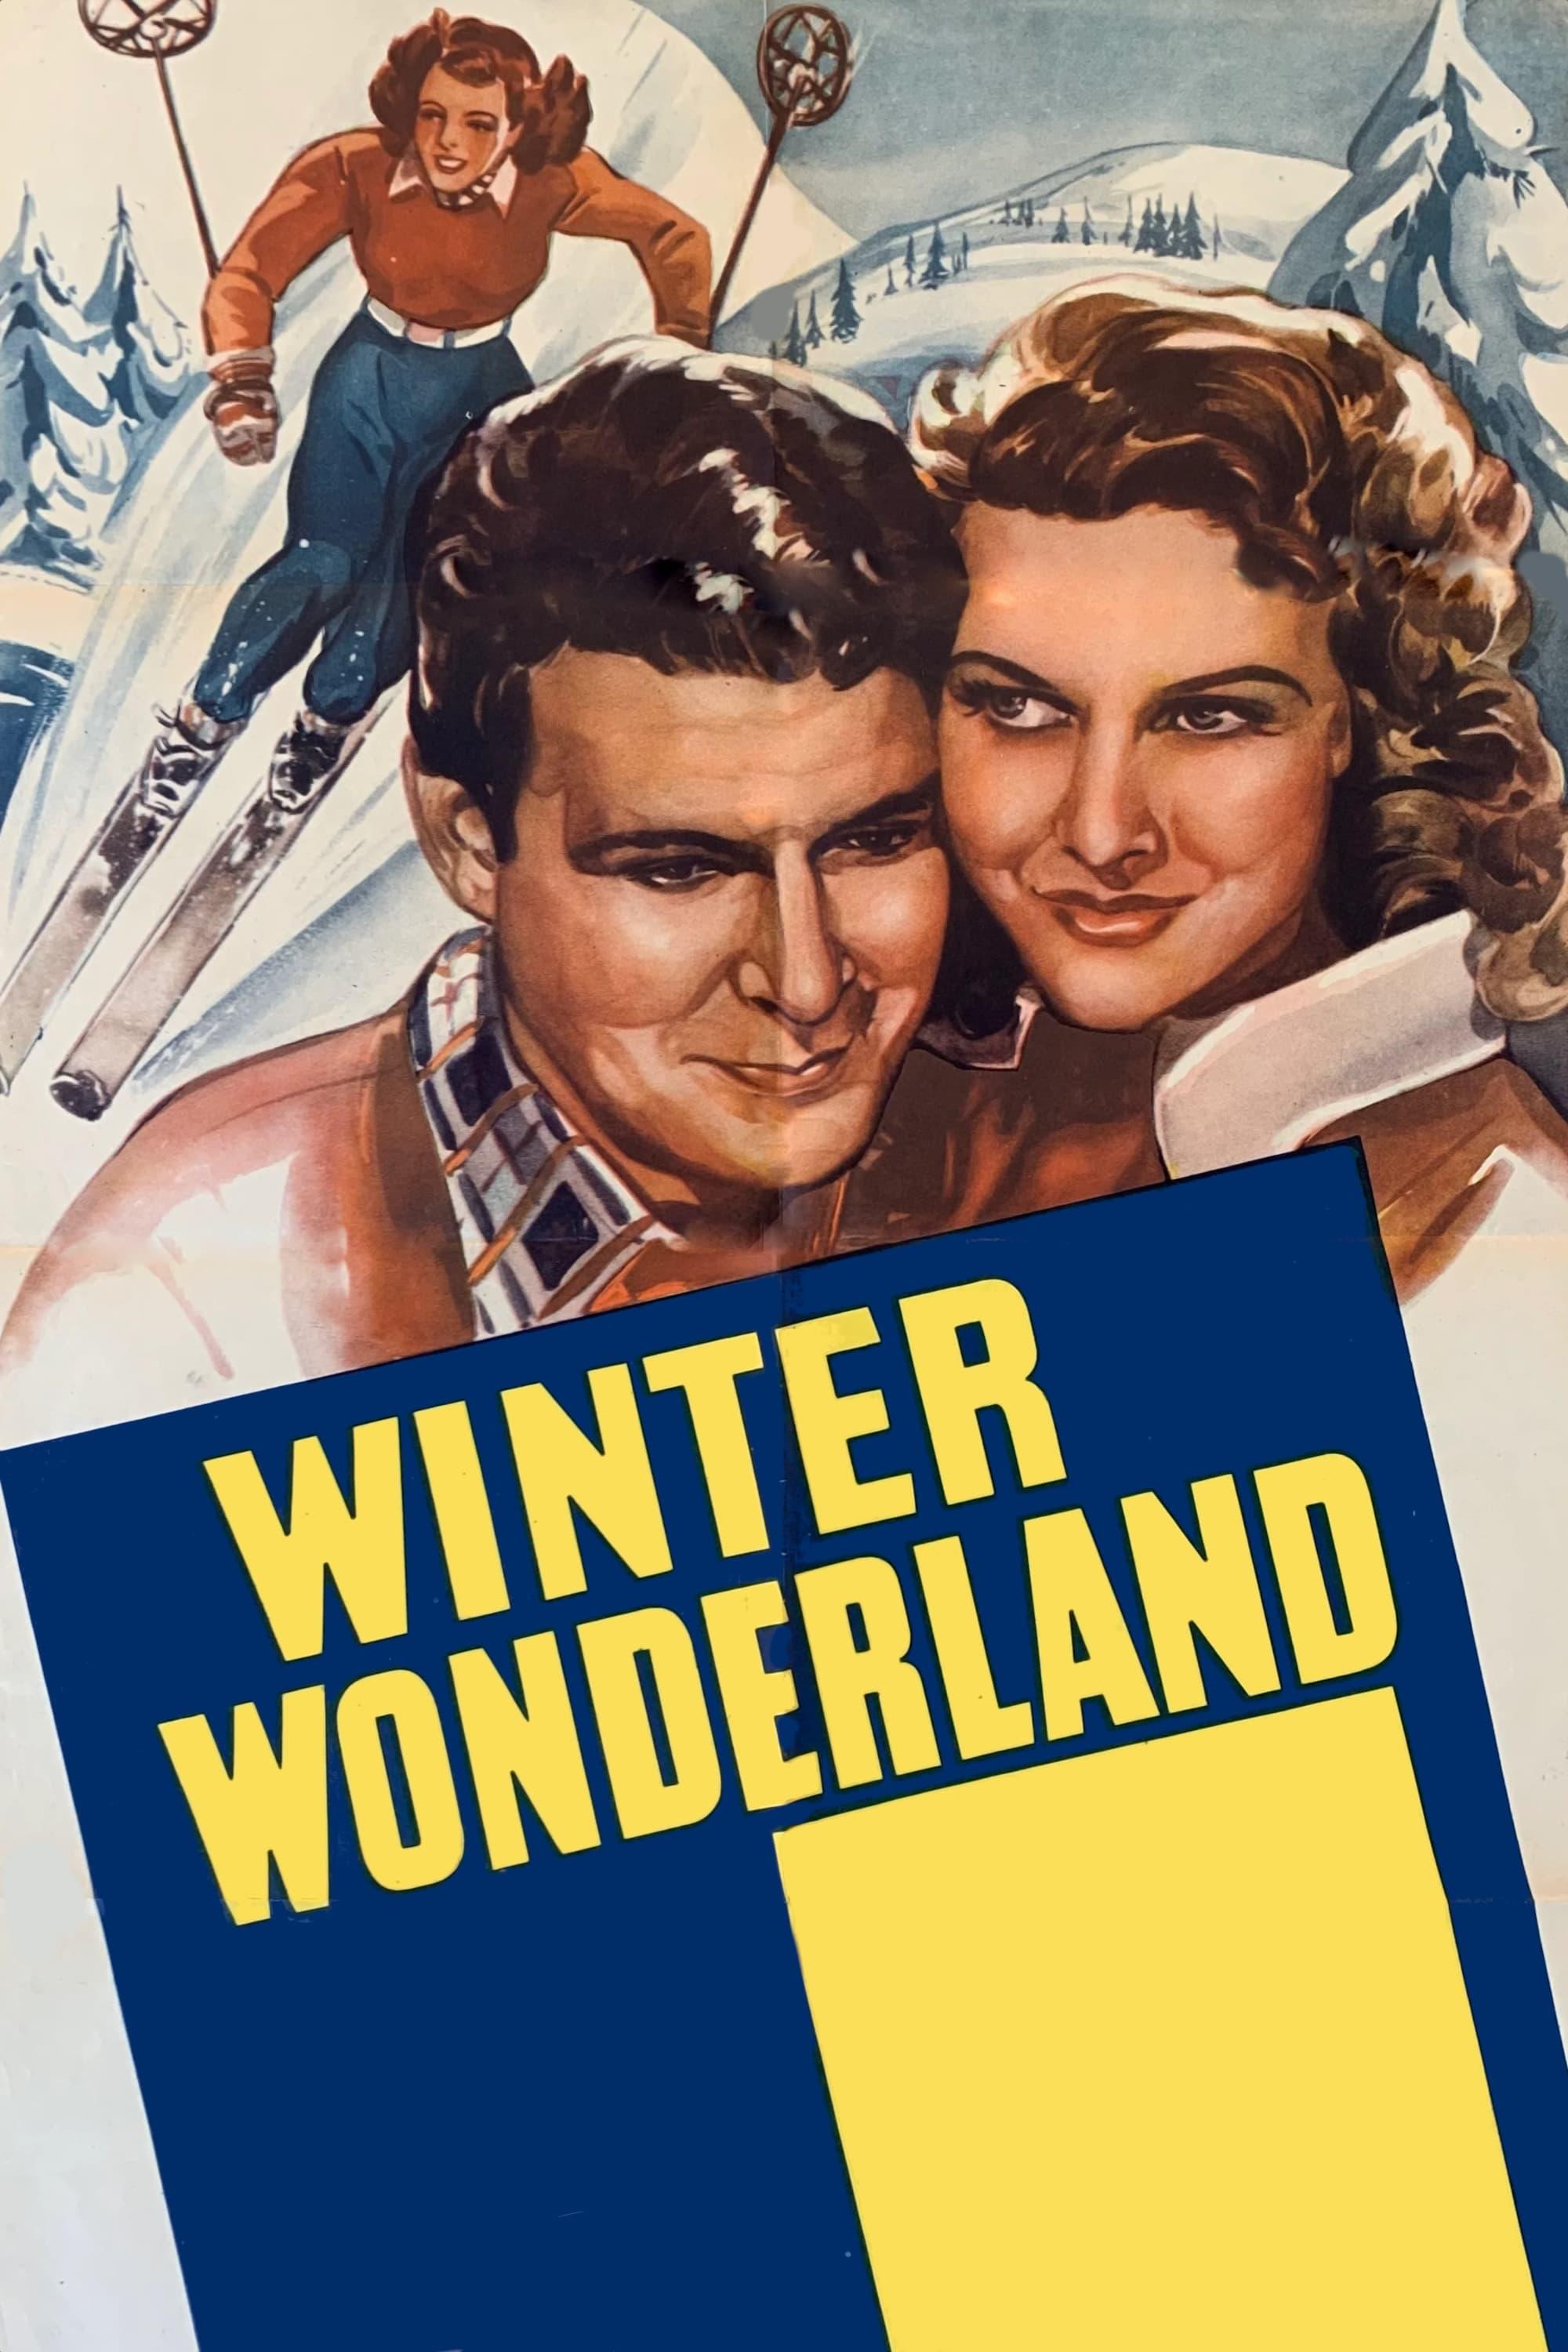 Winter Wonderland poster